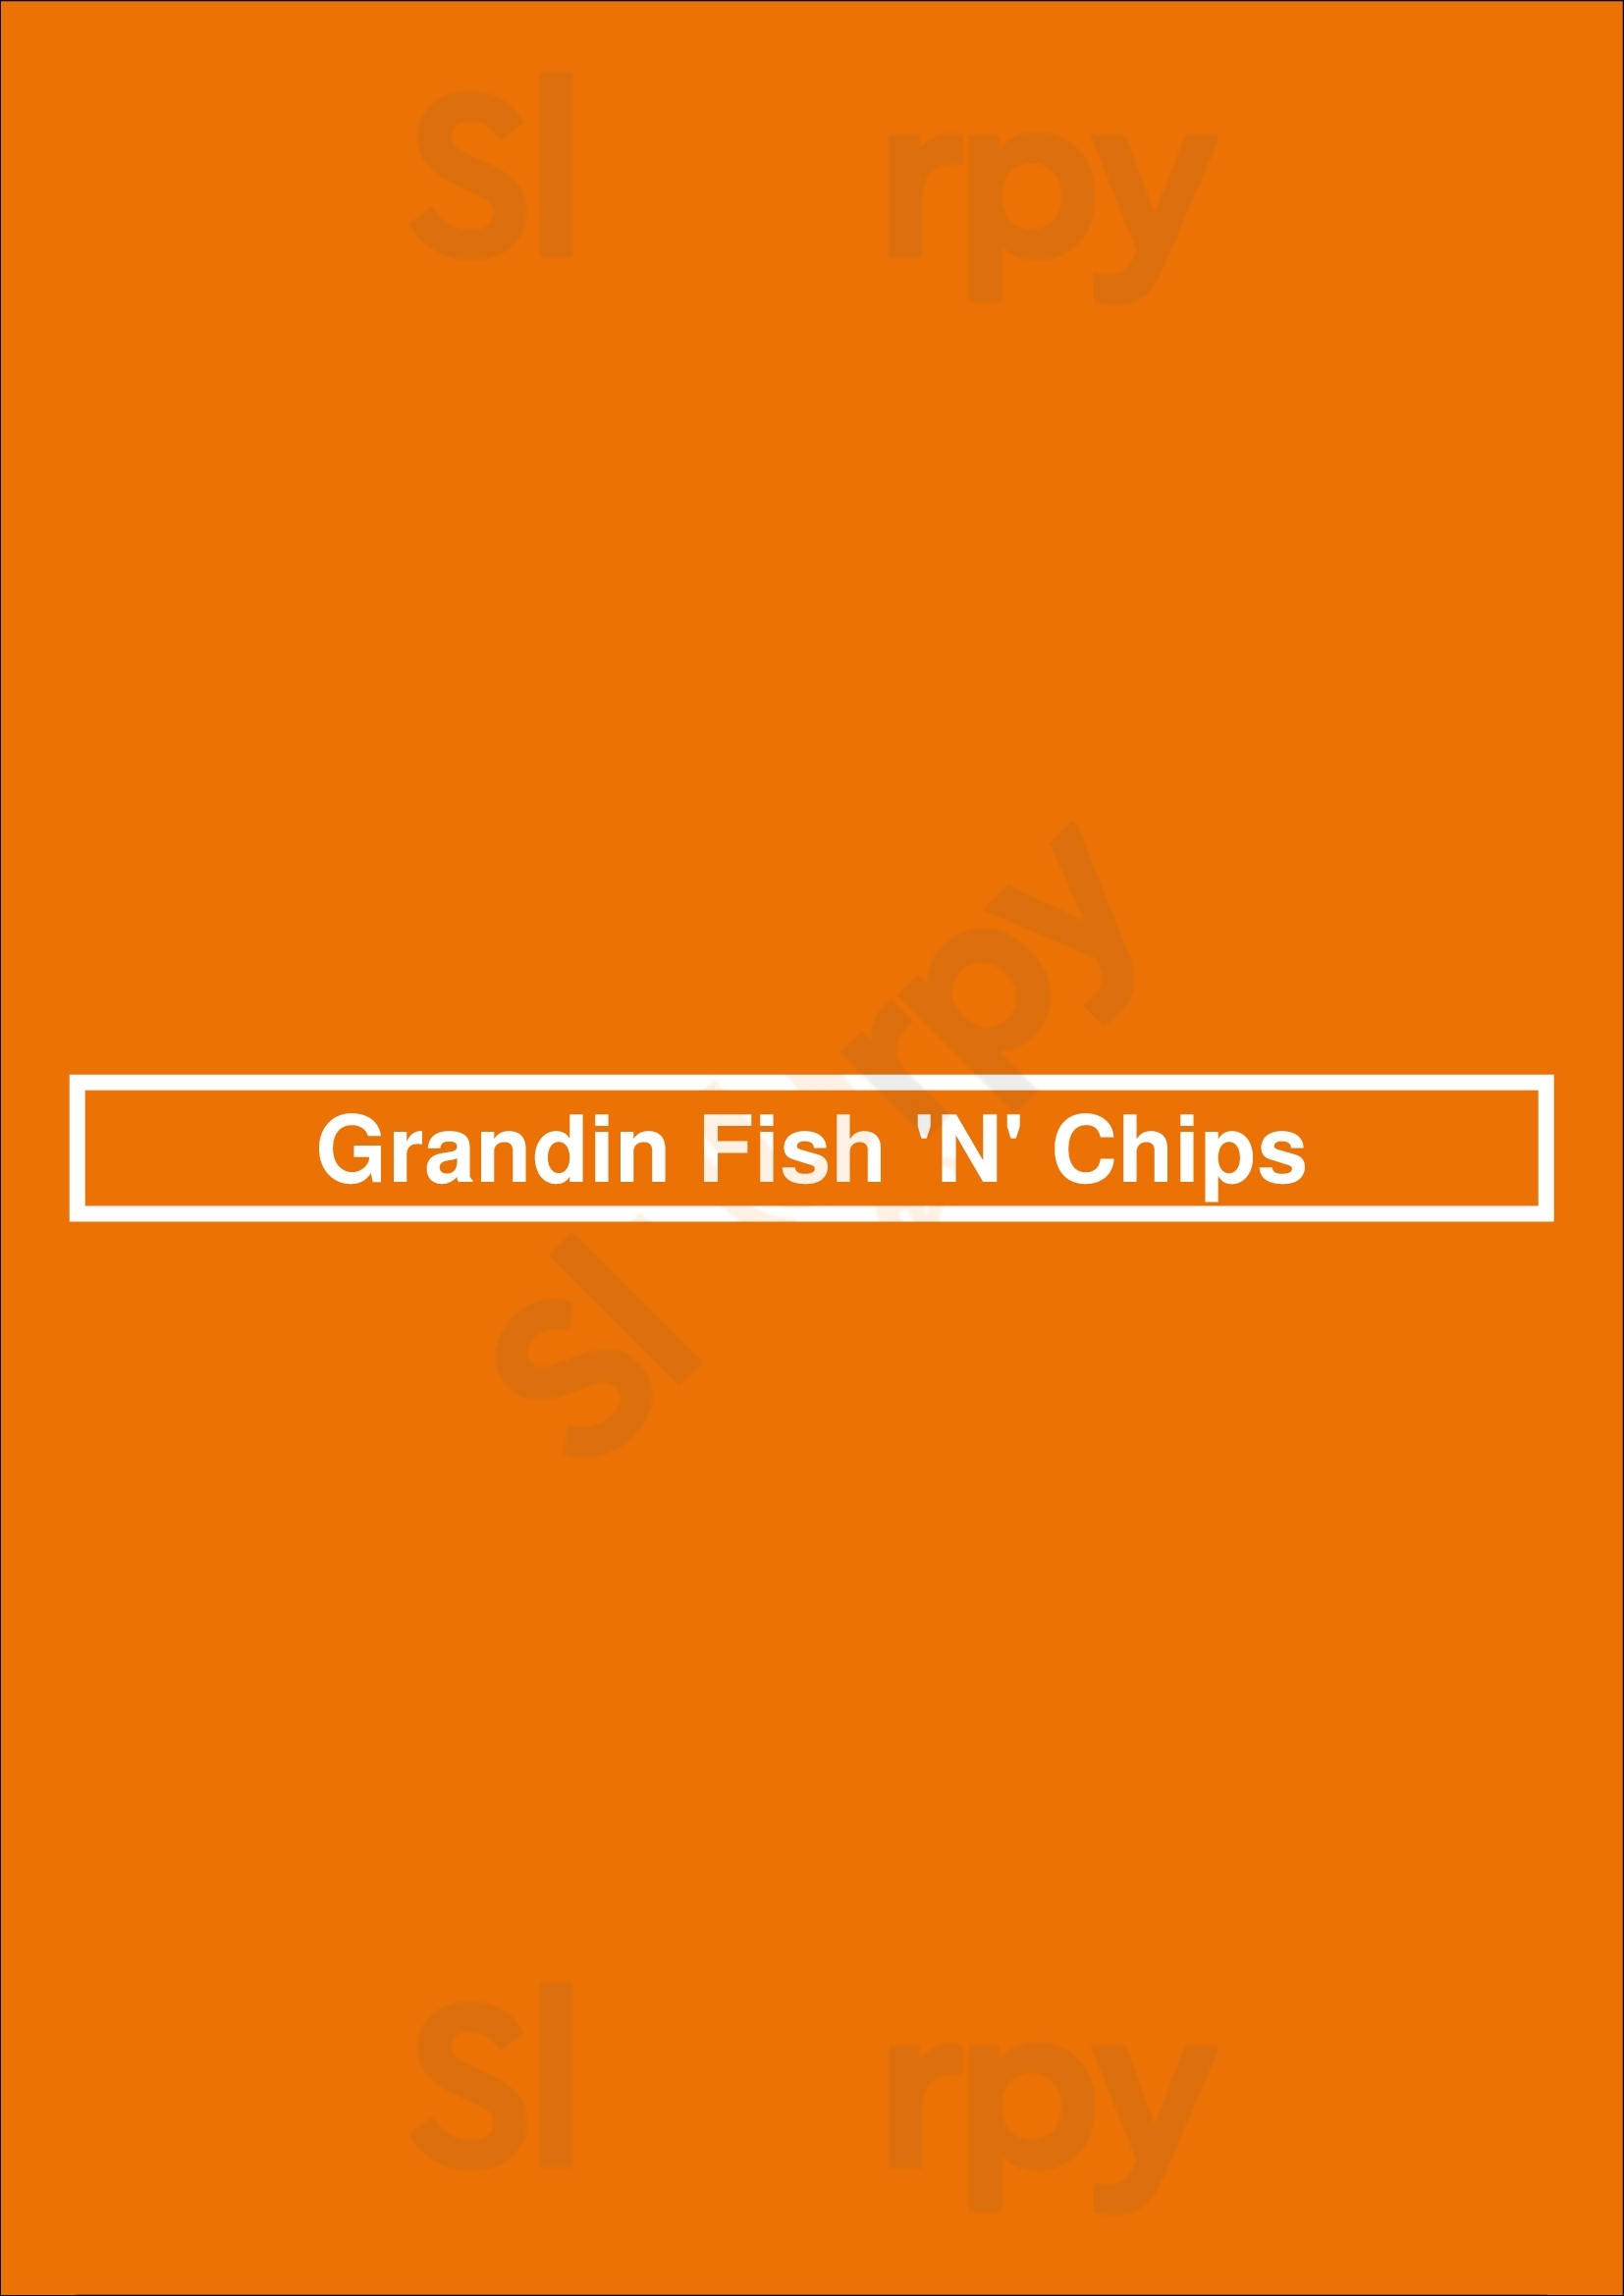 Grandin Fish 'n' Chips Edmonton Menu - 1